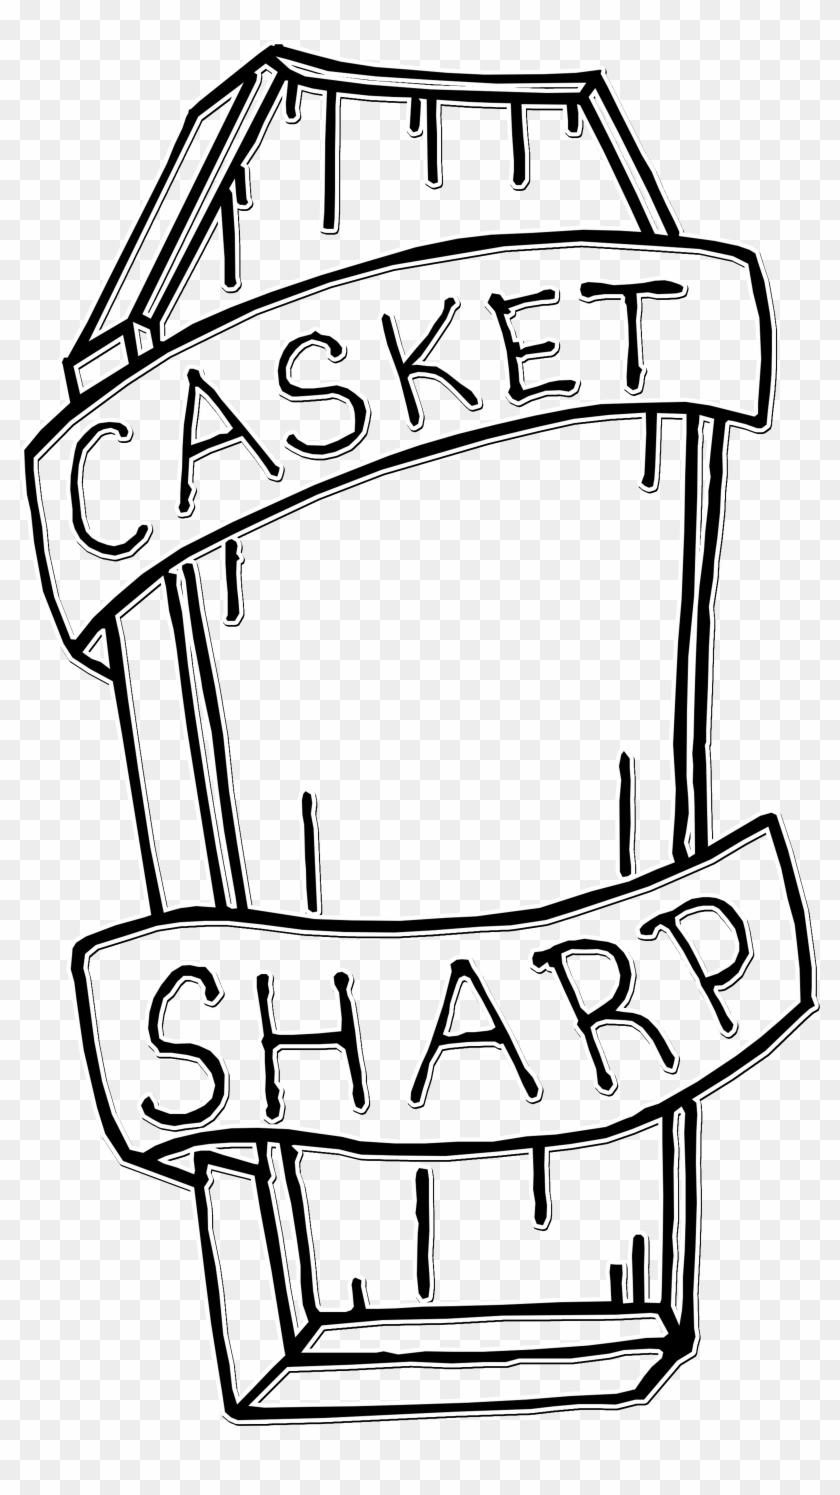 Casket Sharp Clothing - Casket Sharp Clothing #599611